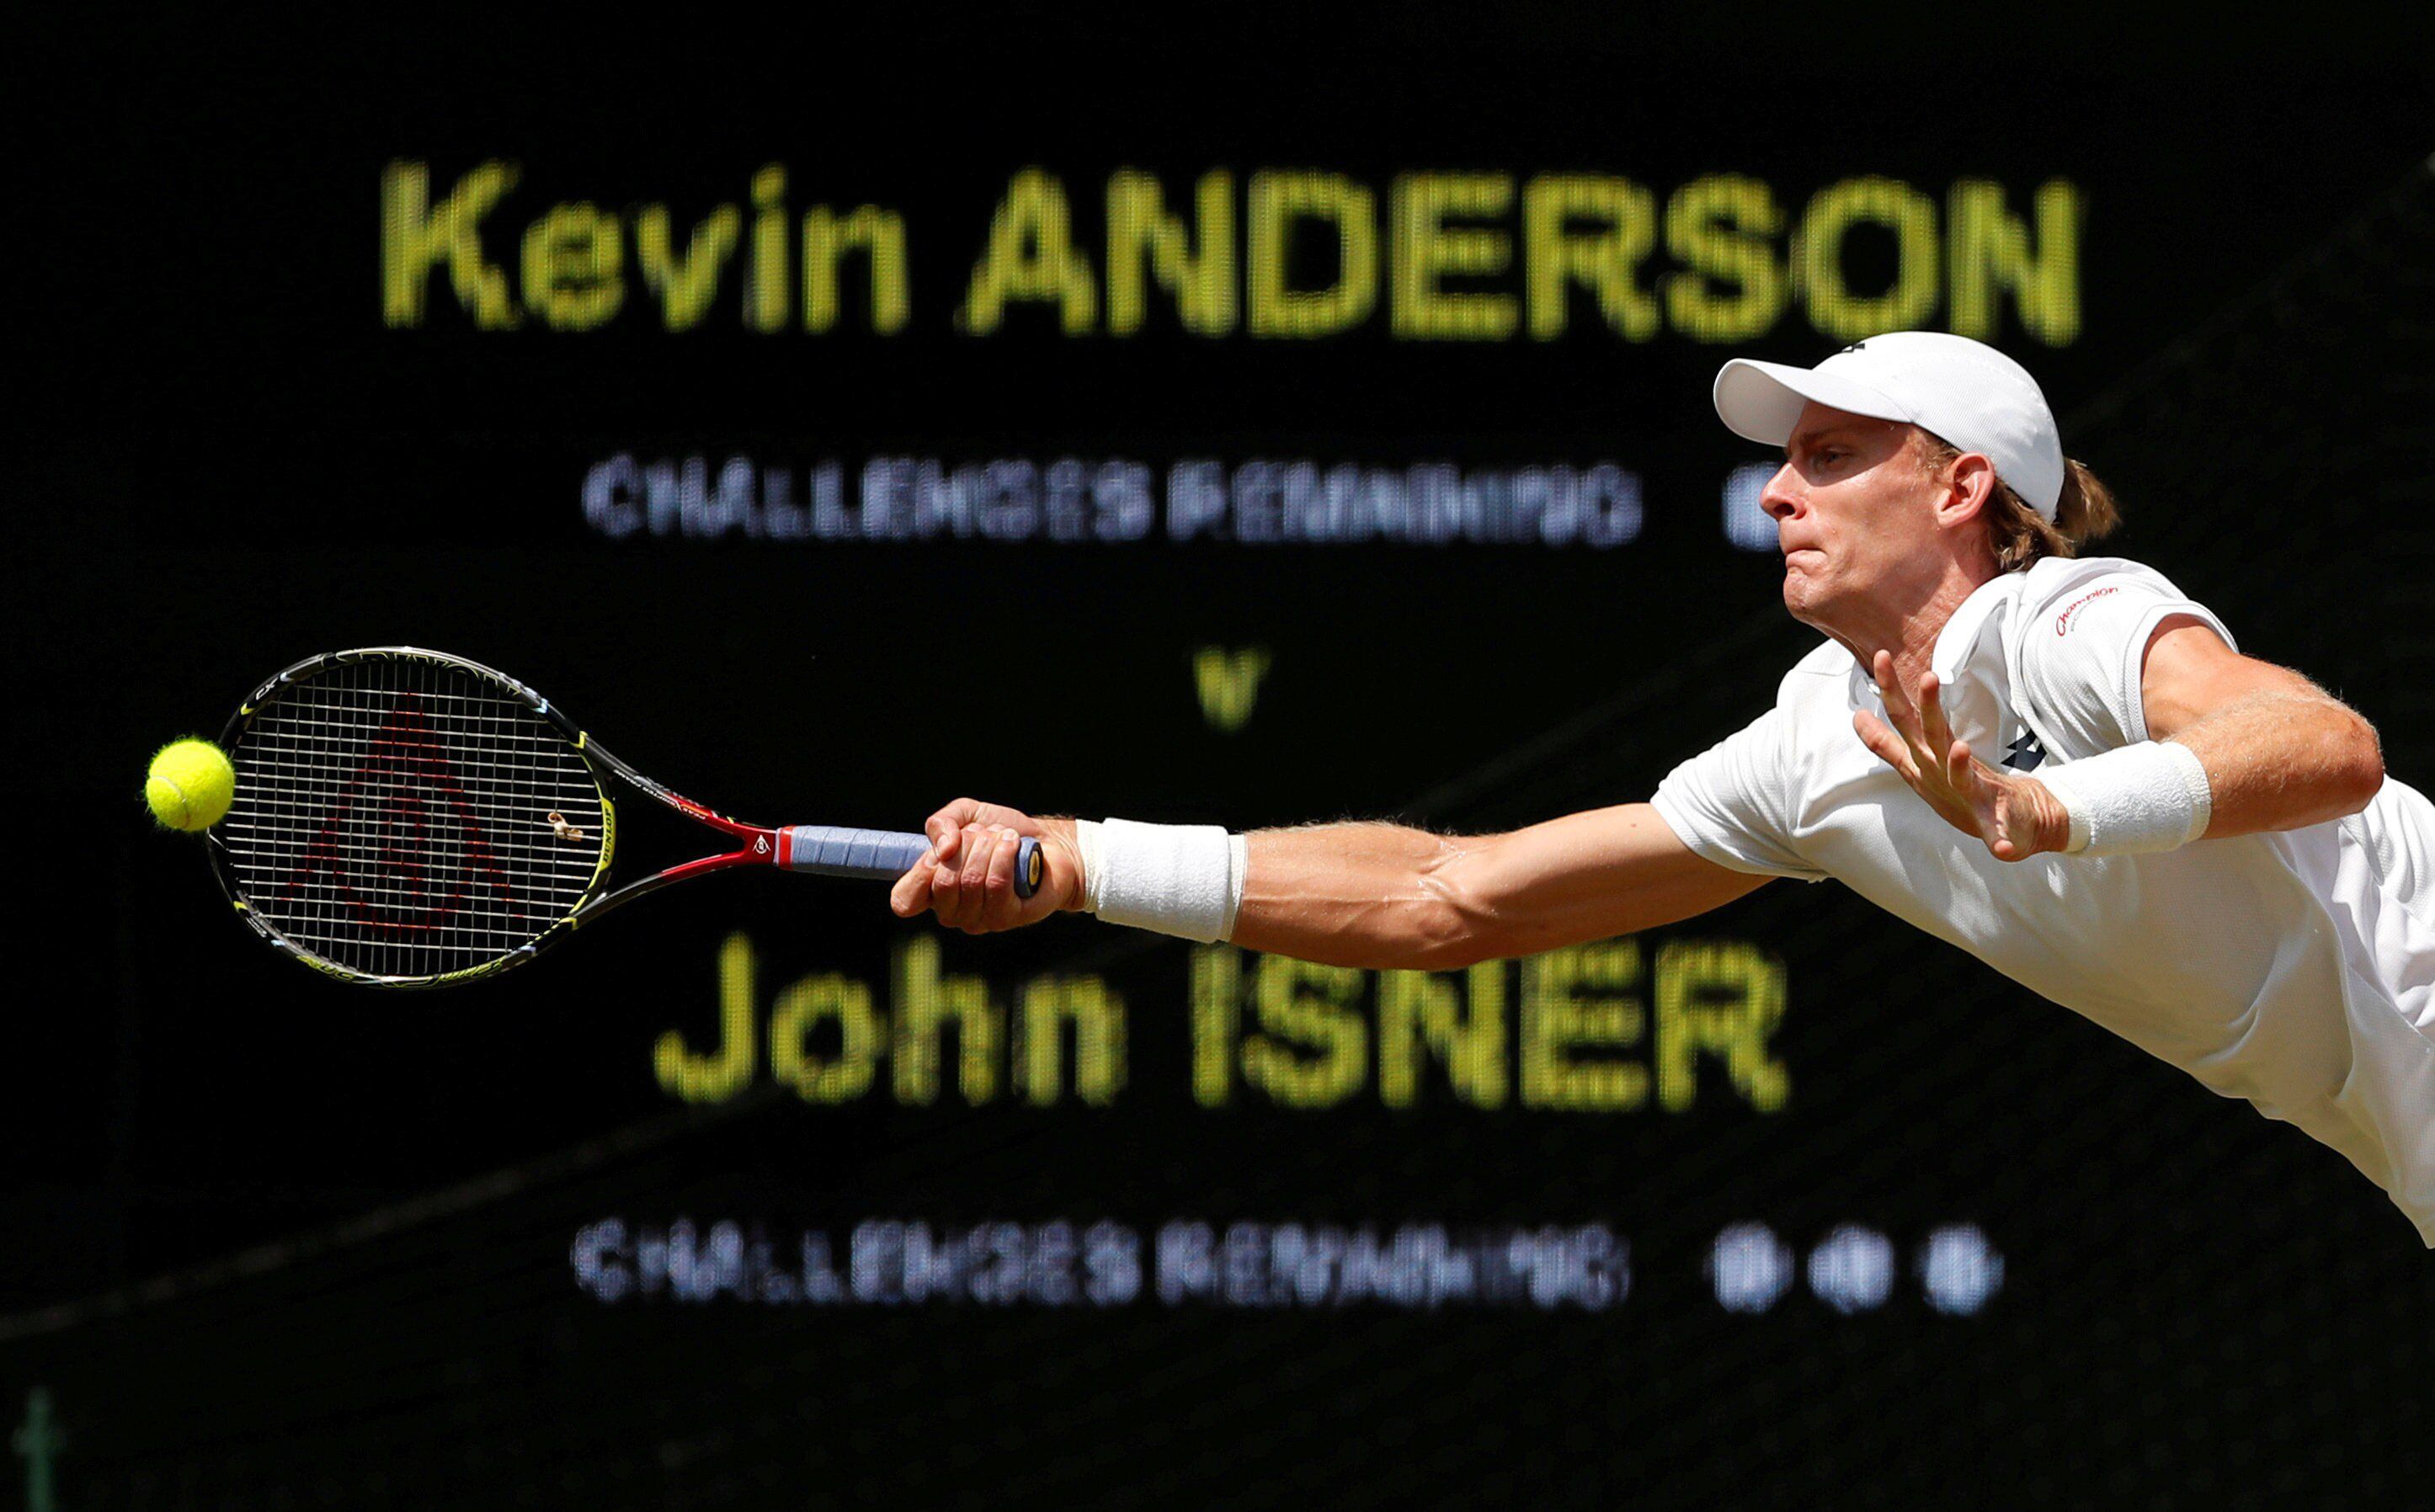 Após 11h05min, John Isner triunfa no jogo mais longo da história do tênis